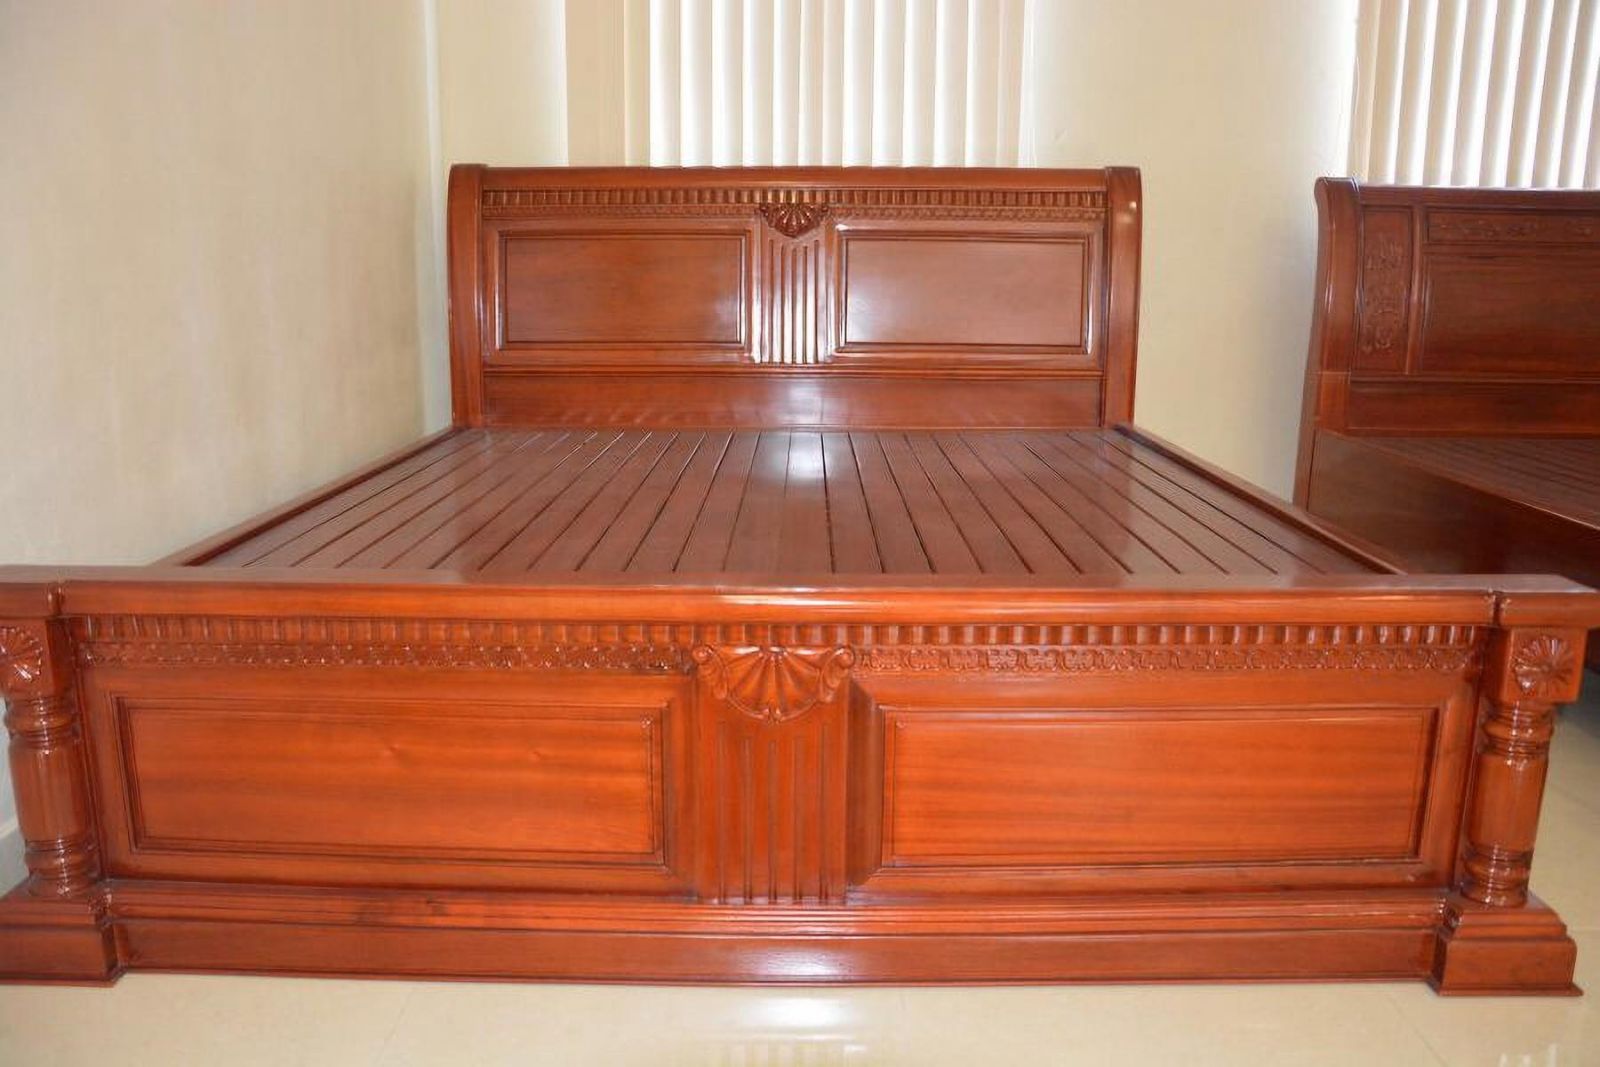 Giường ngủ gỗ Gụ: Nếu bạn muốn sở hữu một món nội thất độc đáo và sang trọng, giường ngủ gỗ Gụ chắc chắn sẽ là một lựa chọn hoàn hảo. Sự kết hợp giữa chất lượng và thiết kế đẹp mắt sẽ khiến cho giường ngủ gỗ Gụ trở thành điểm nhấn ấn tượng trong căn phòng của bạn.